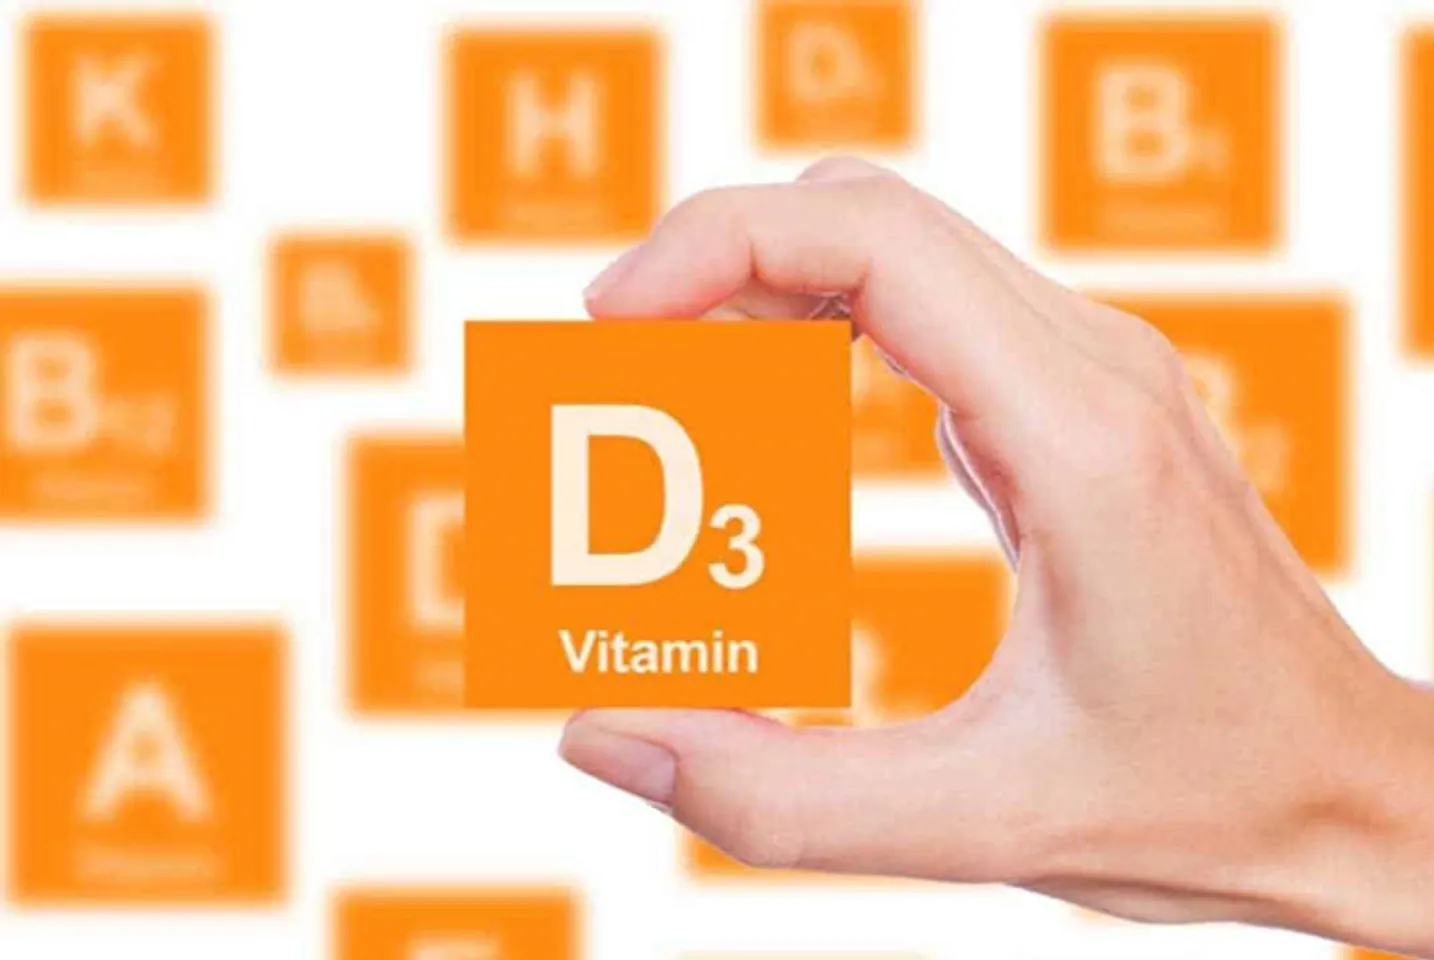 vai-tro-cua-vitamin-d3-doi-voi-tre-so-sinh-jpg-1557906909-15052019145509.jpg